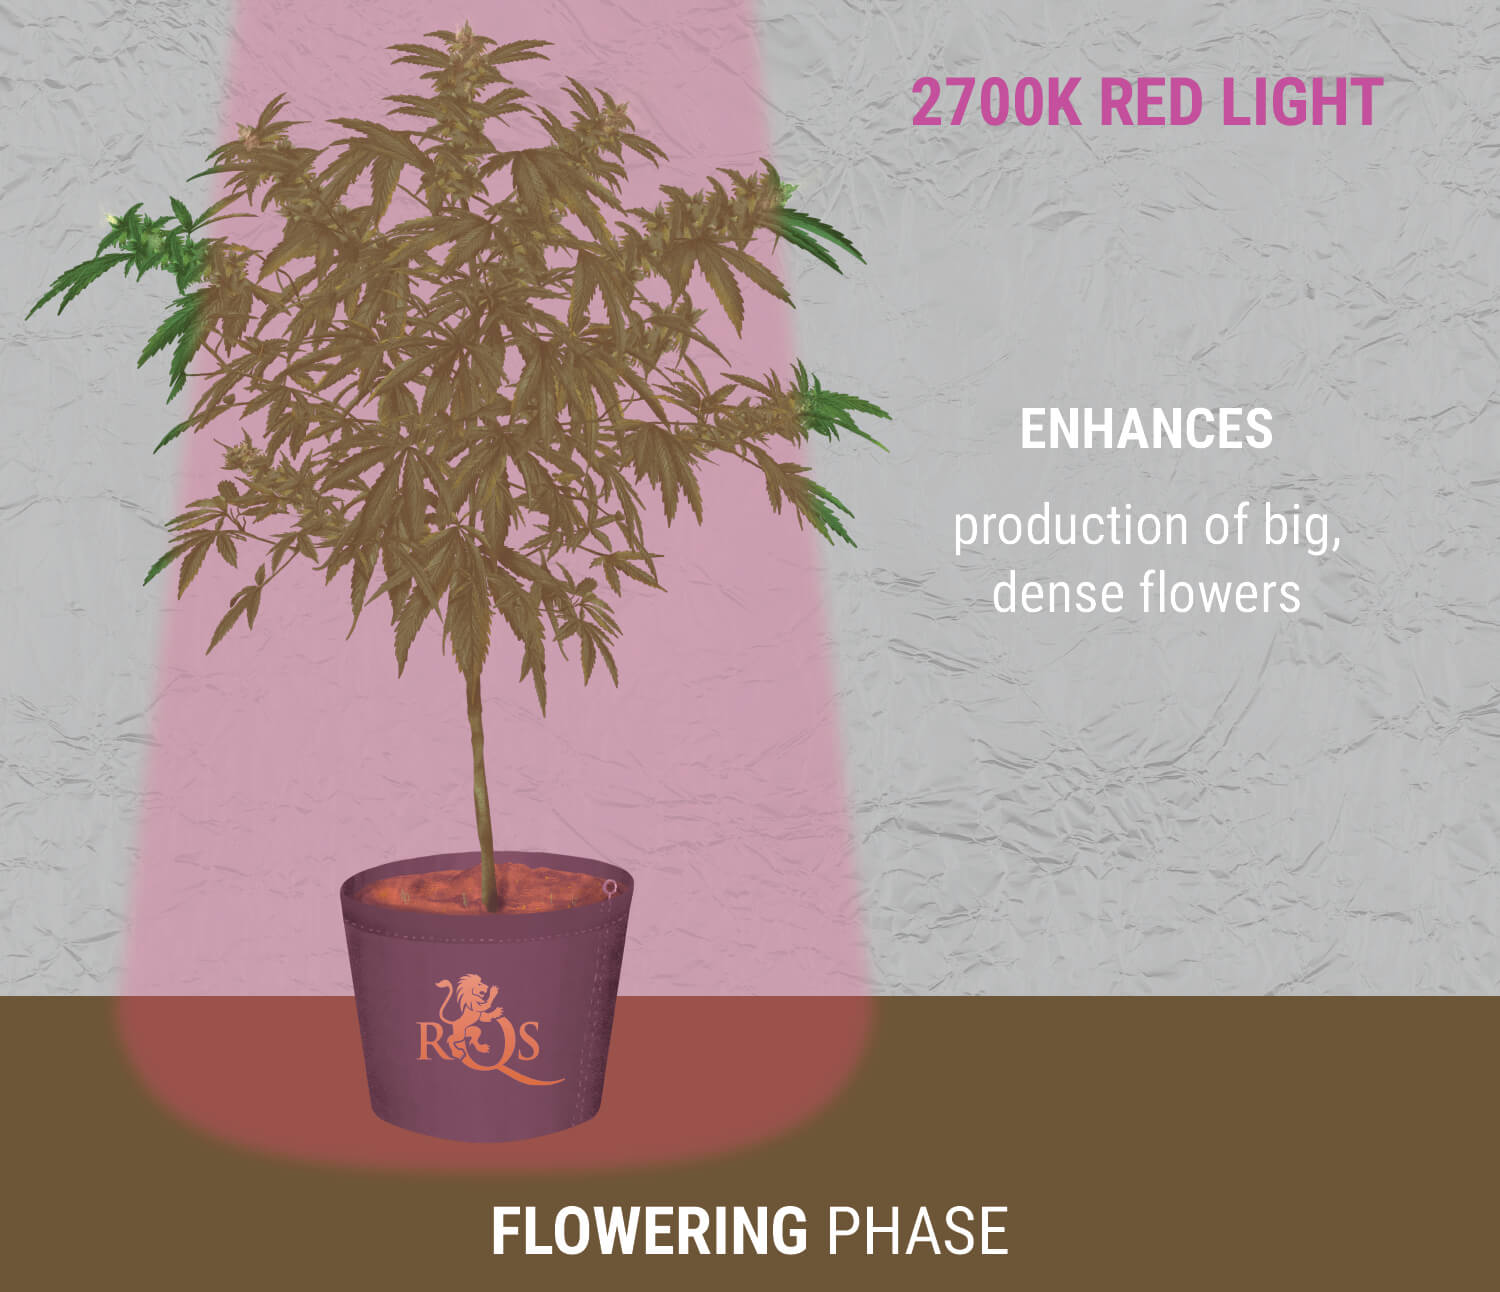 2700K red light during flowering